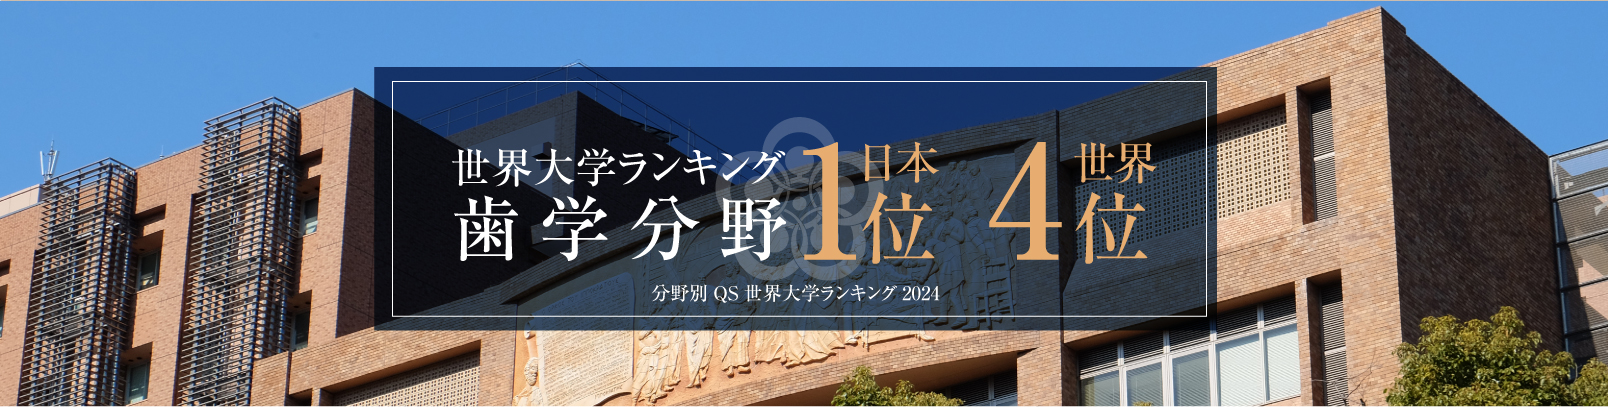 世界大学ランキング 歯学分野 日本1位 世界4位